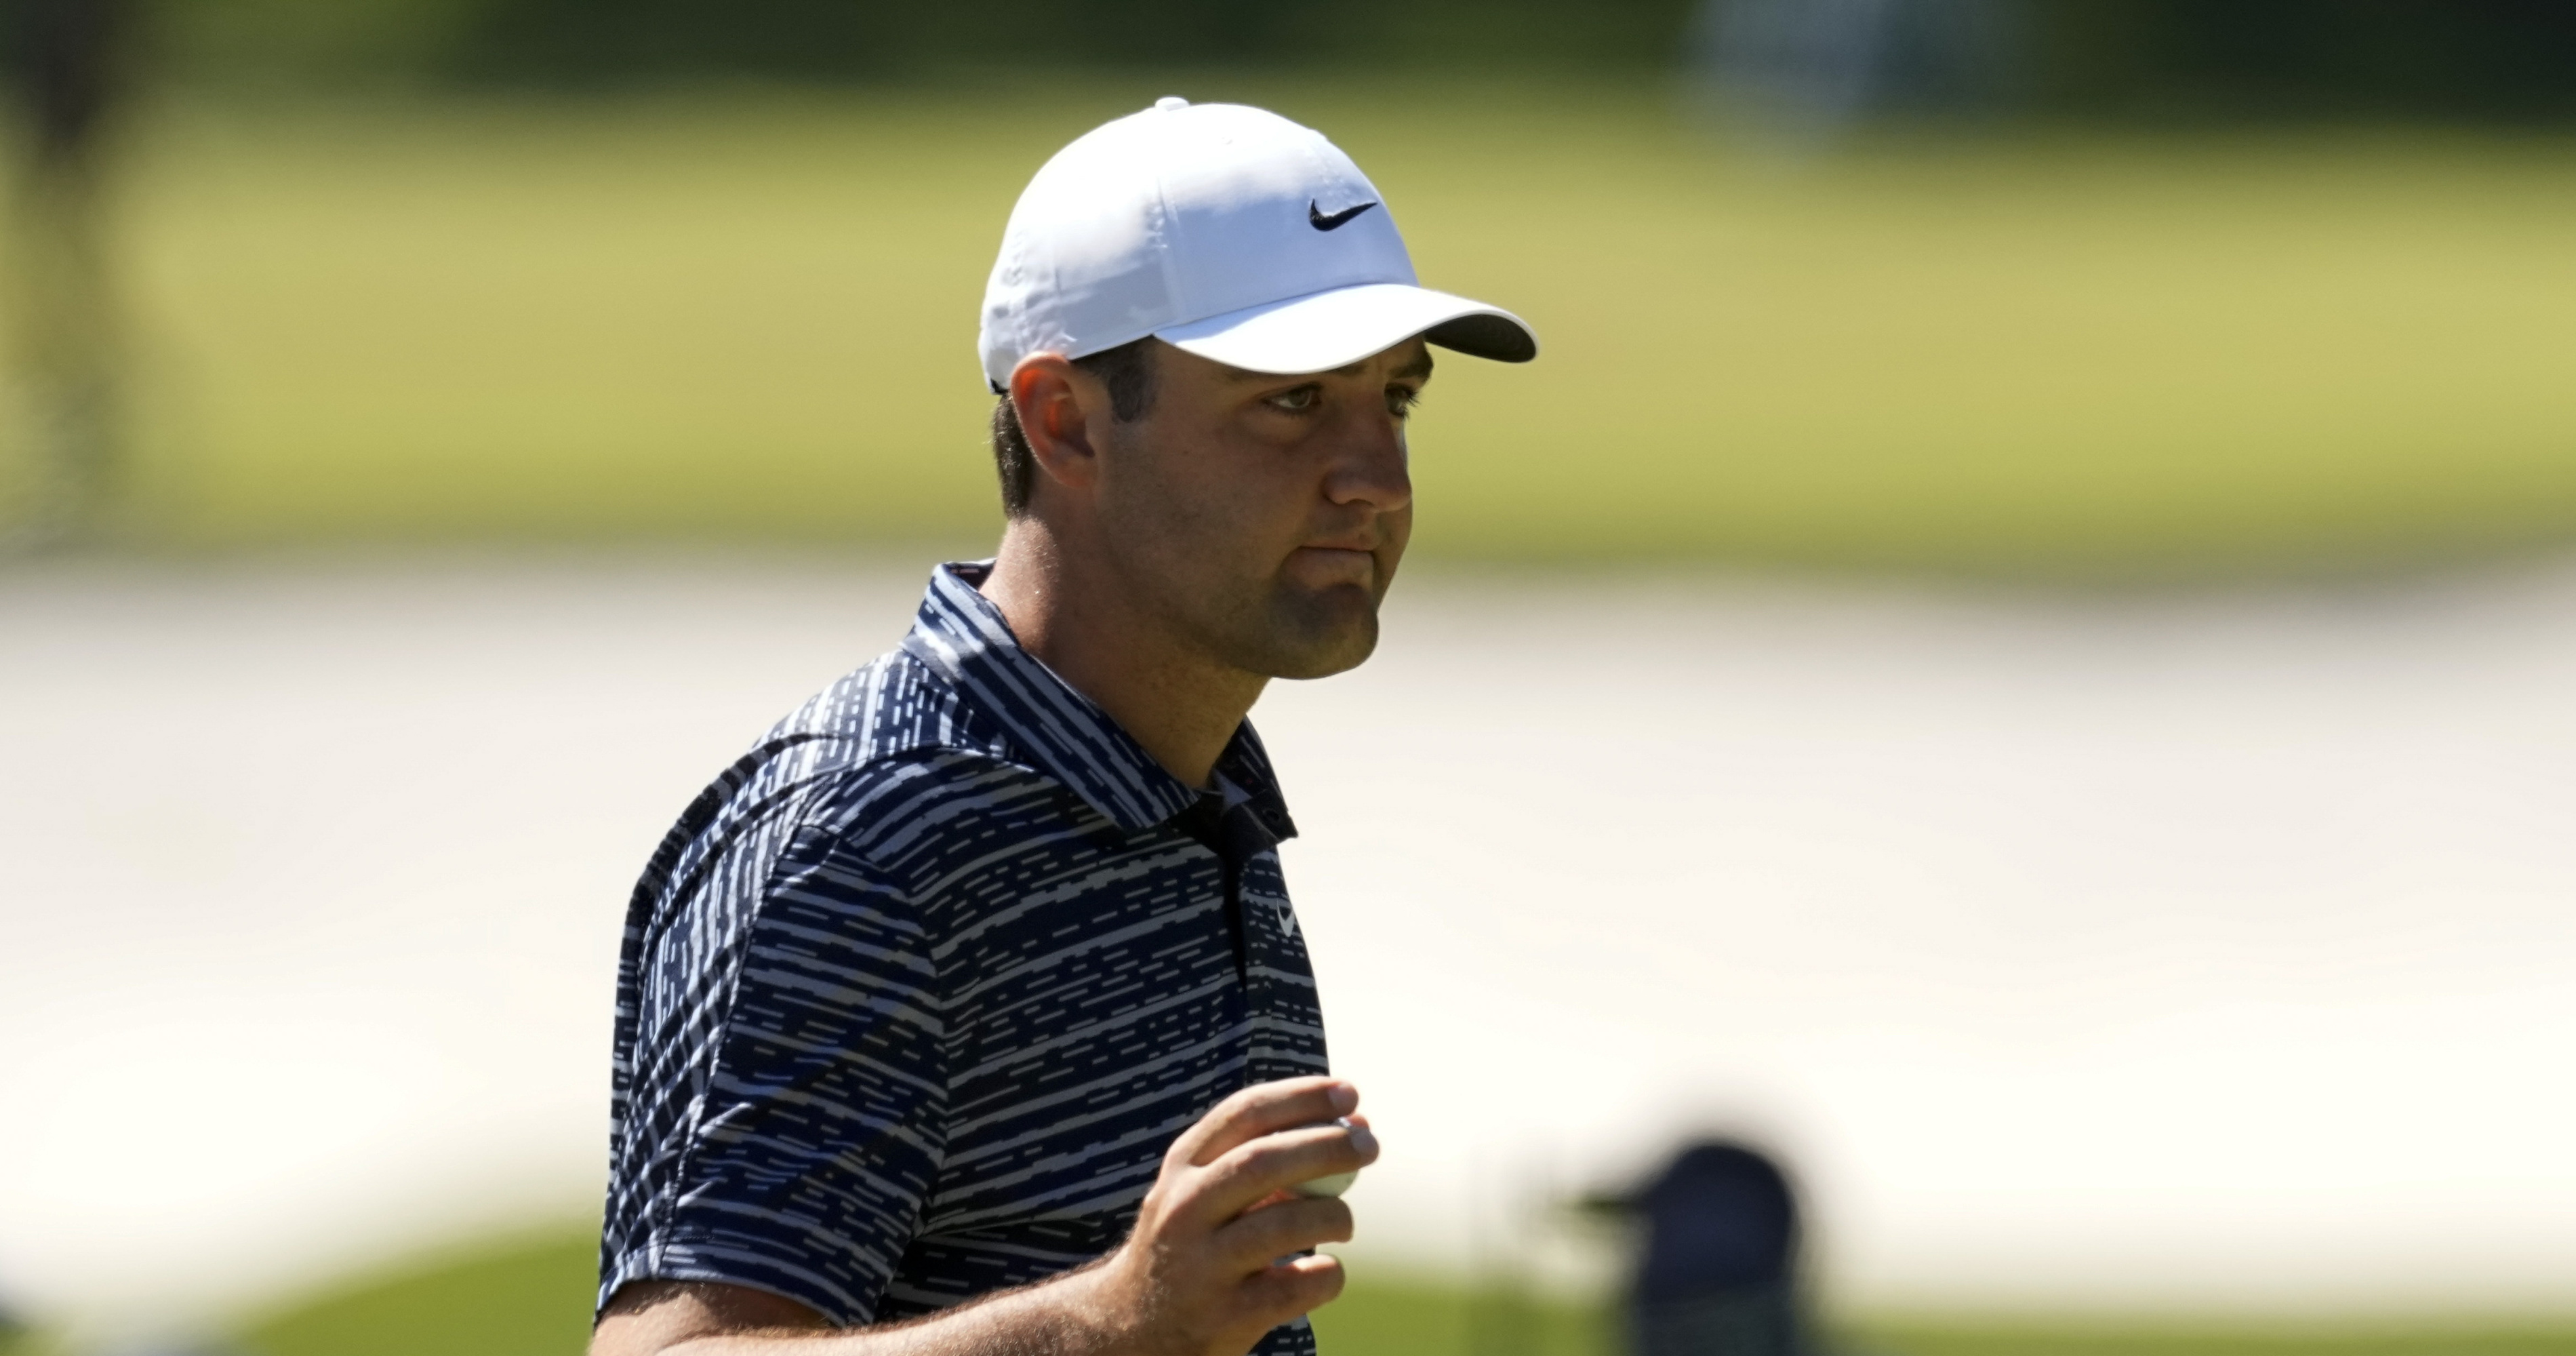 Scottie Scheffler Tops 10M in 2022 PGA Tour Earnings After Masters Win